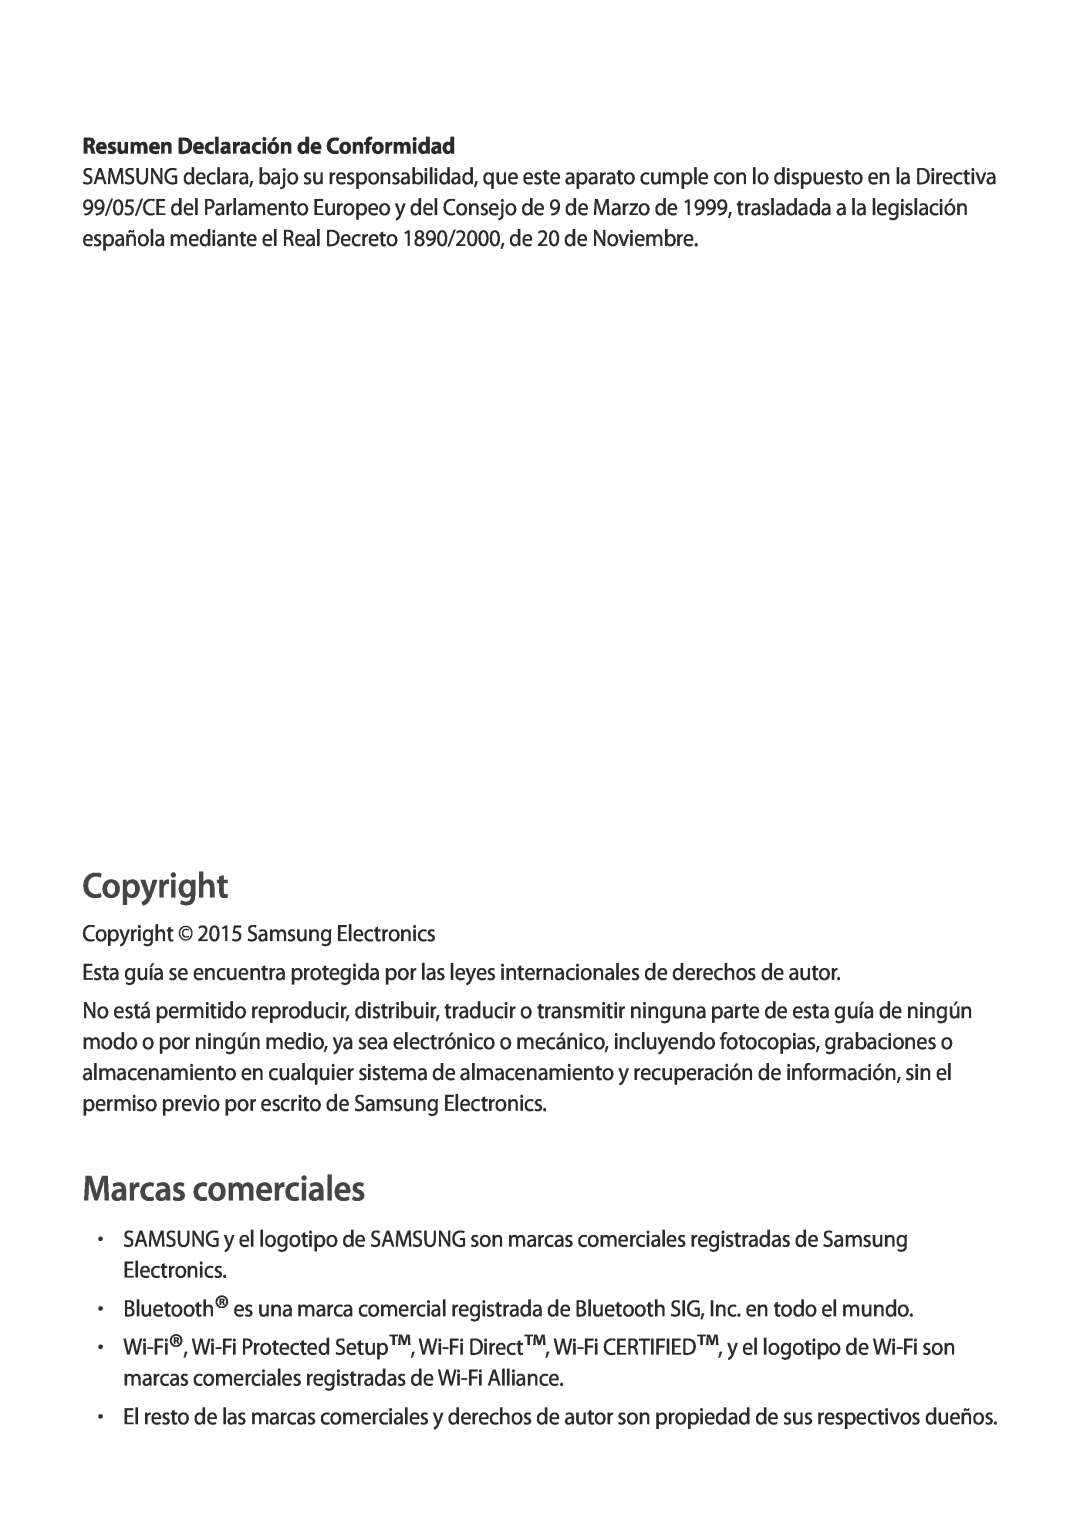 Samsung SM-T700NZWADBT, SM-T700NZWAXEO, SM-T700NZWATPH Resumen Declaración de Conformidad, Copyright, Marcas comerciales 